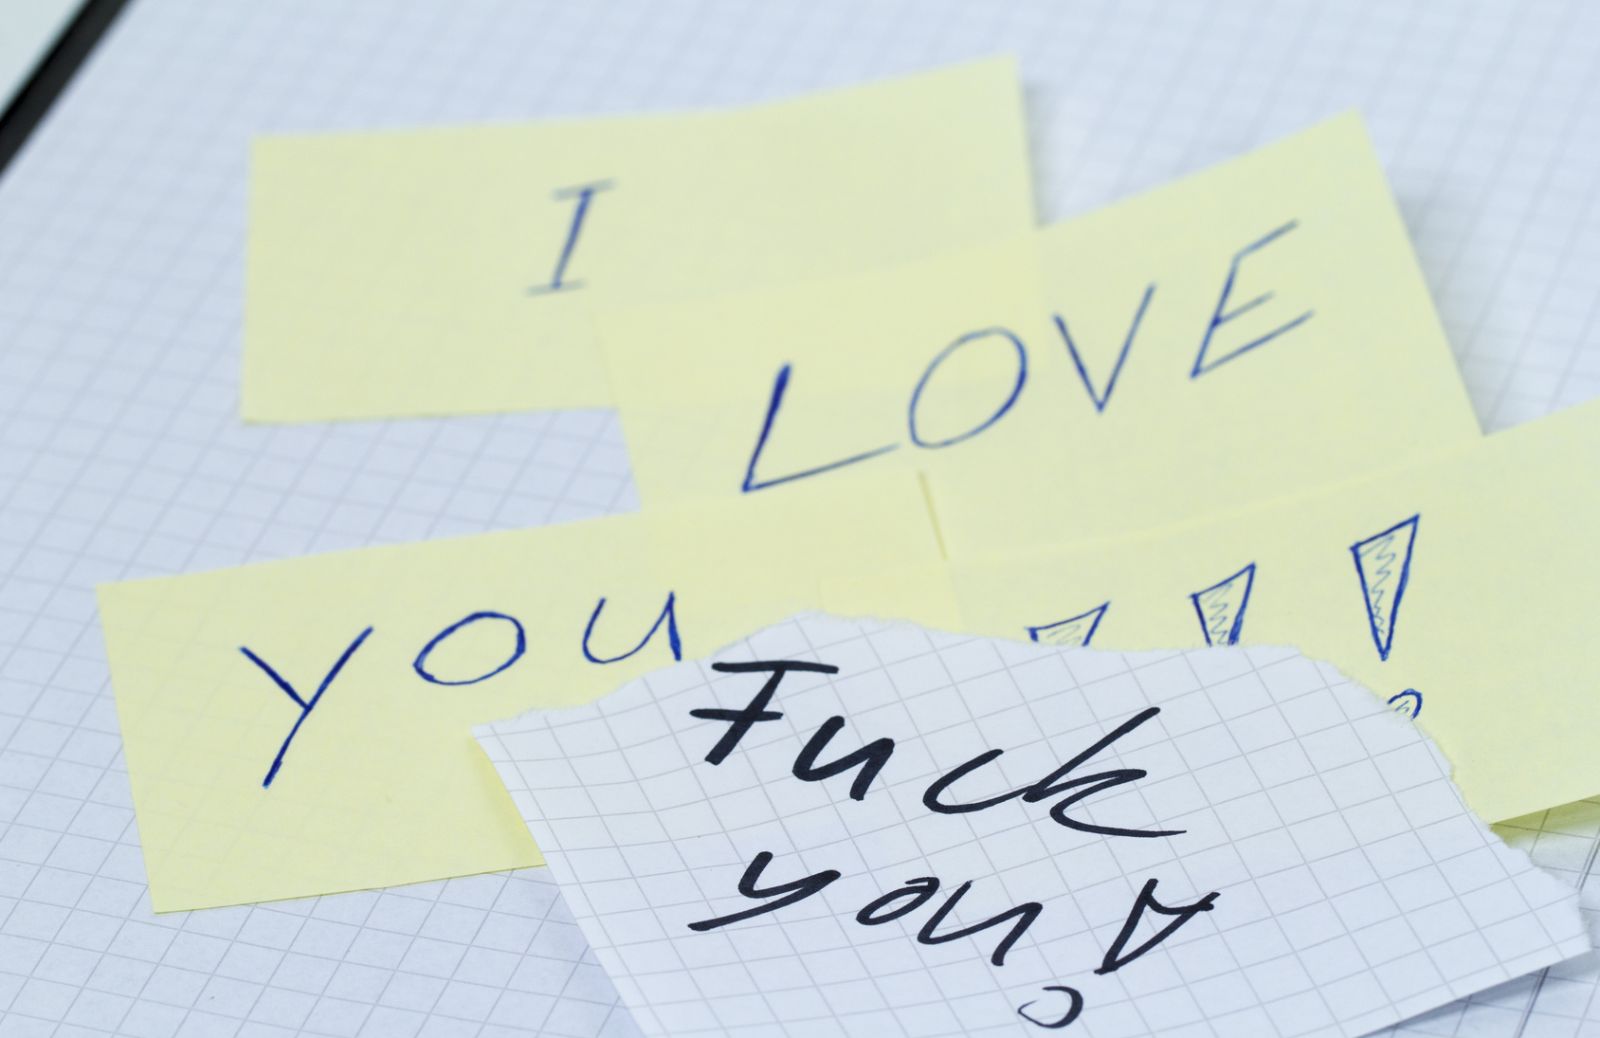 “Ti odio perché mi ami”: il borderline nelle relazioni